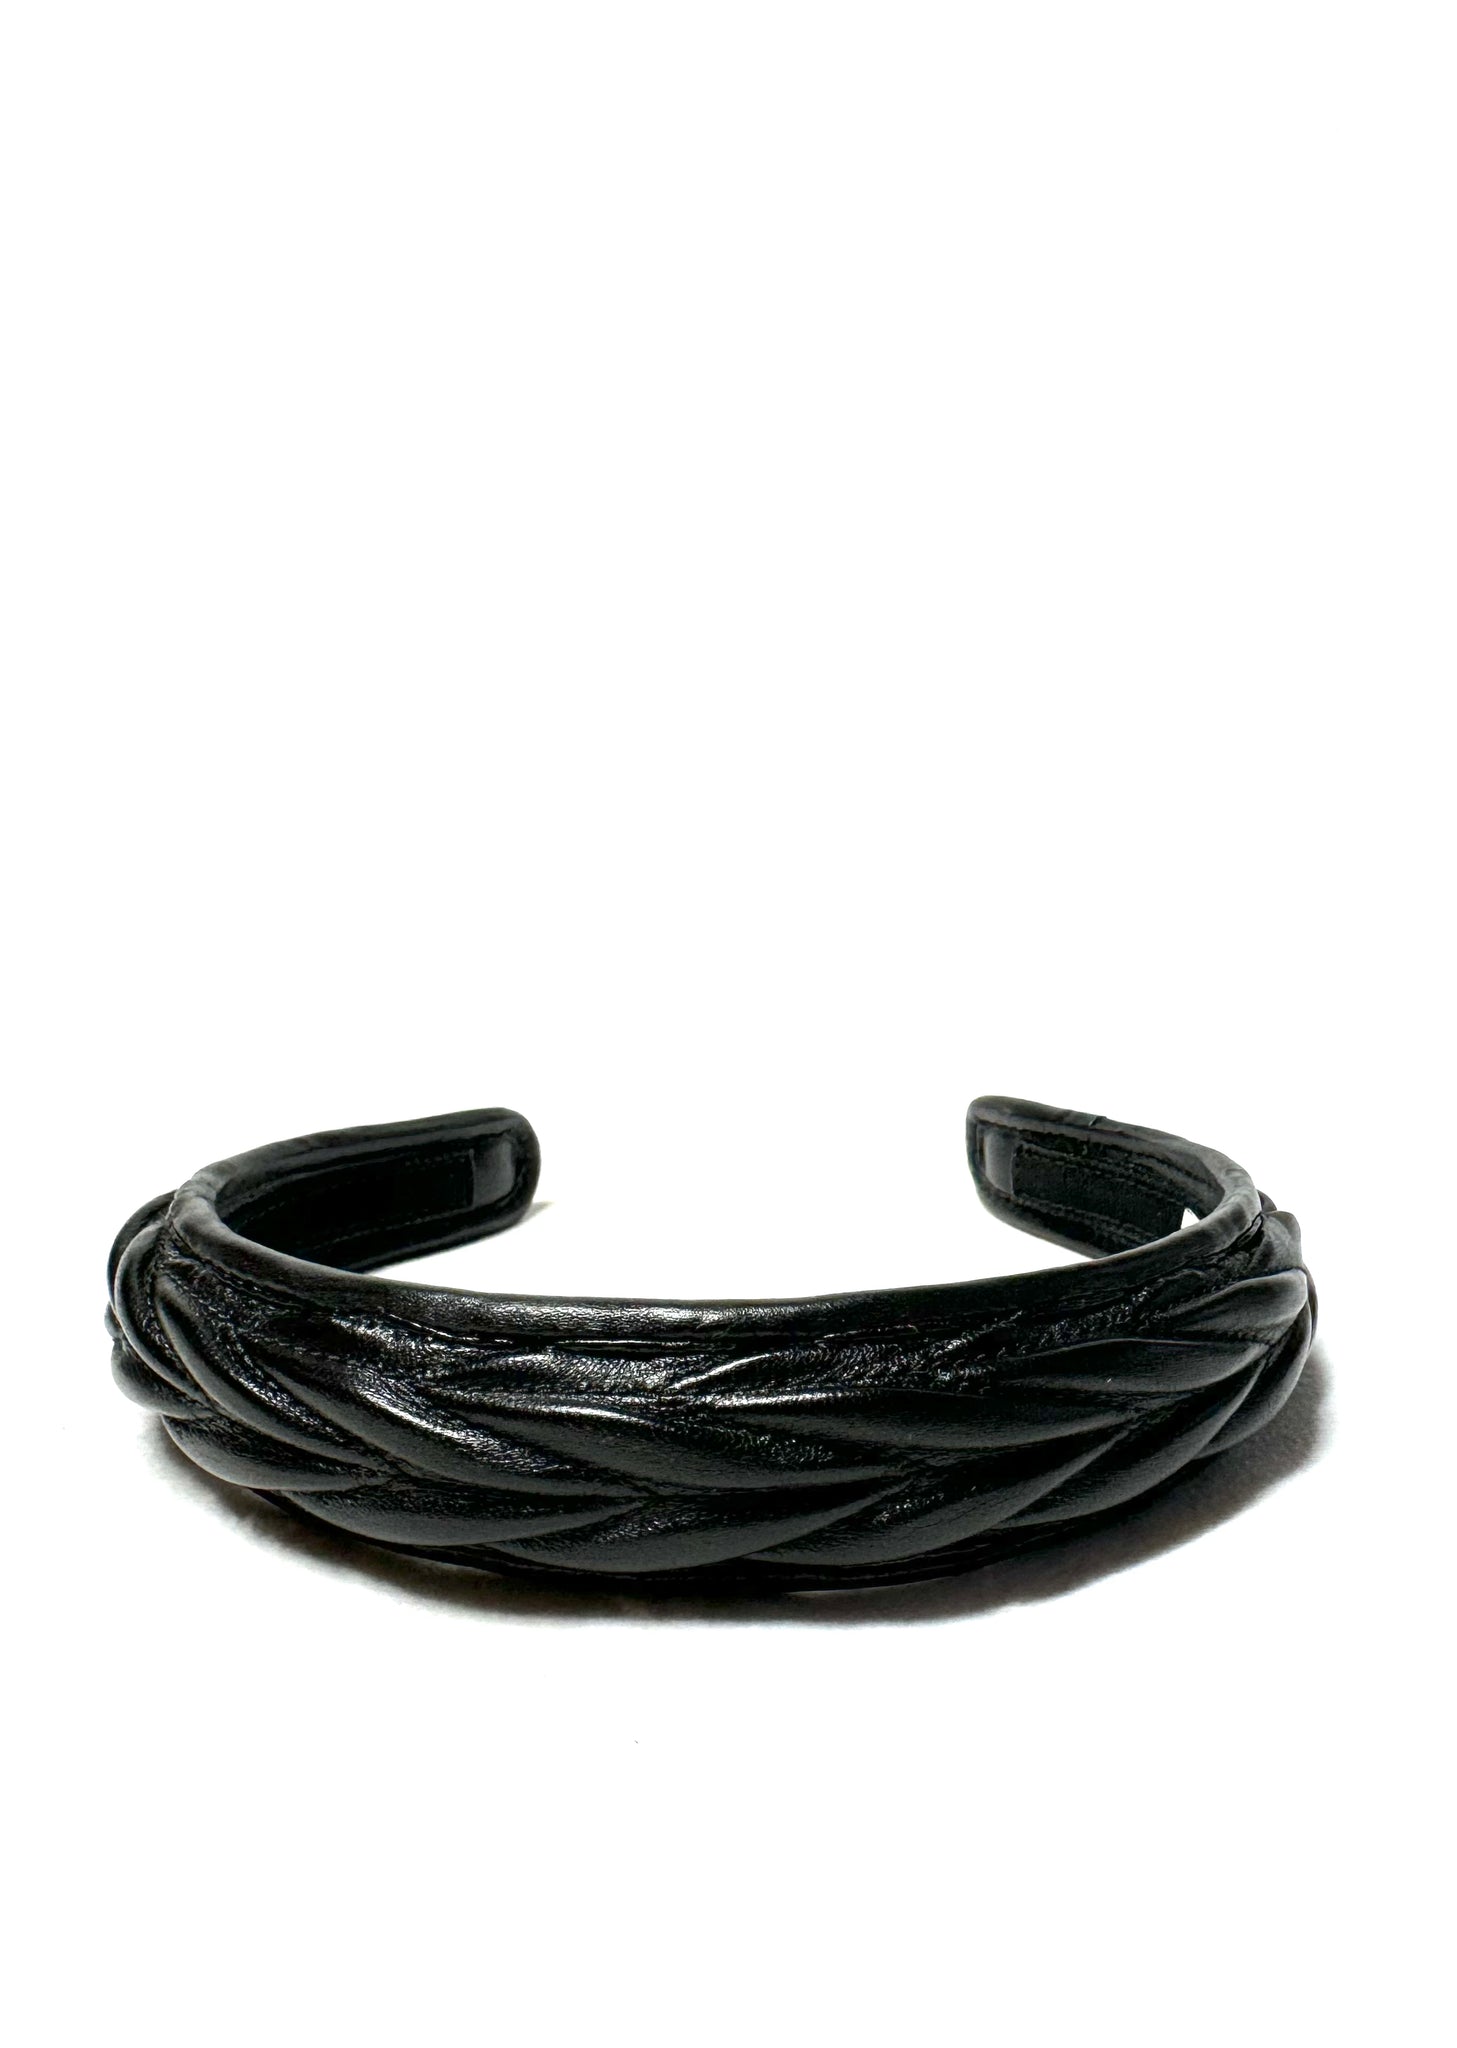 Miu Miu Black Leather Headband *NEW*